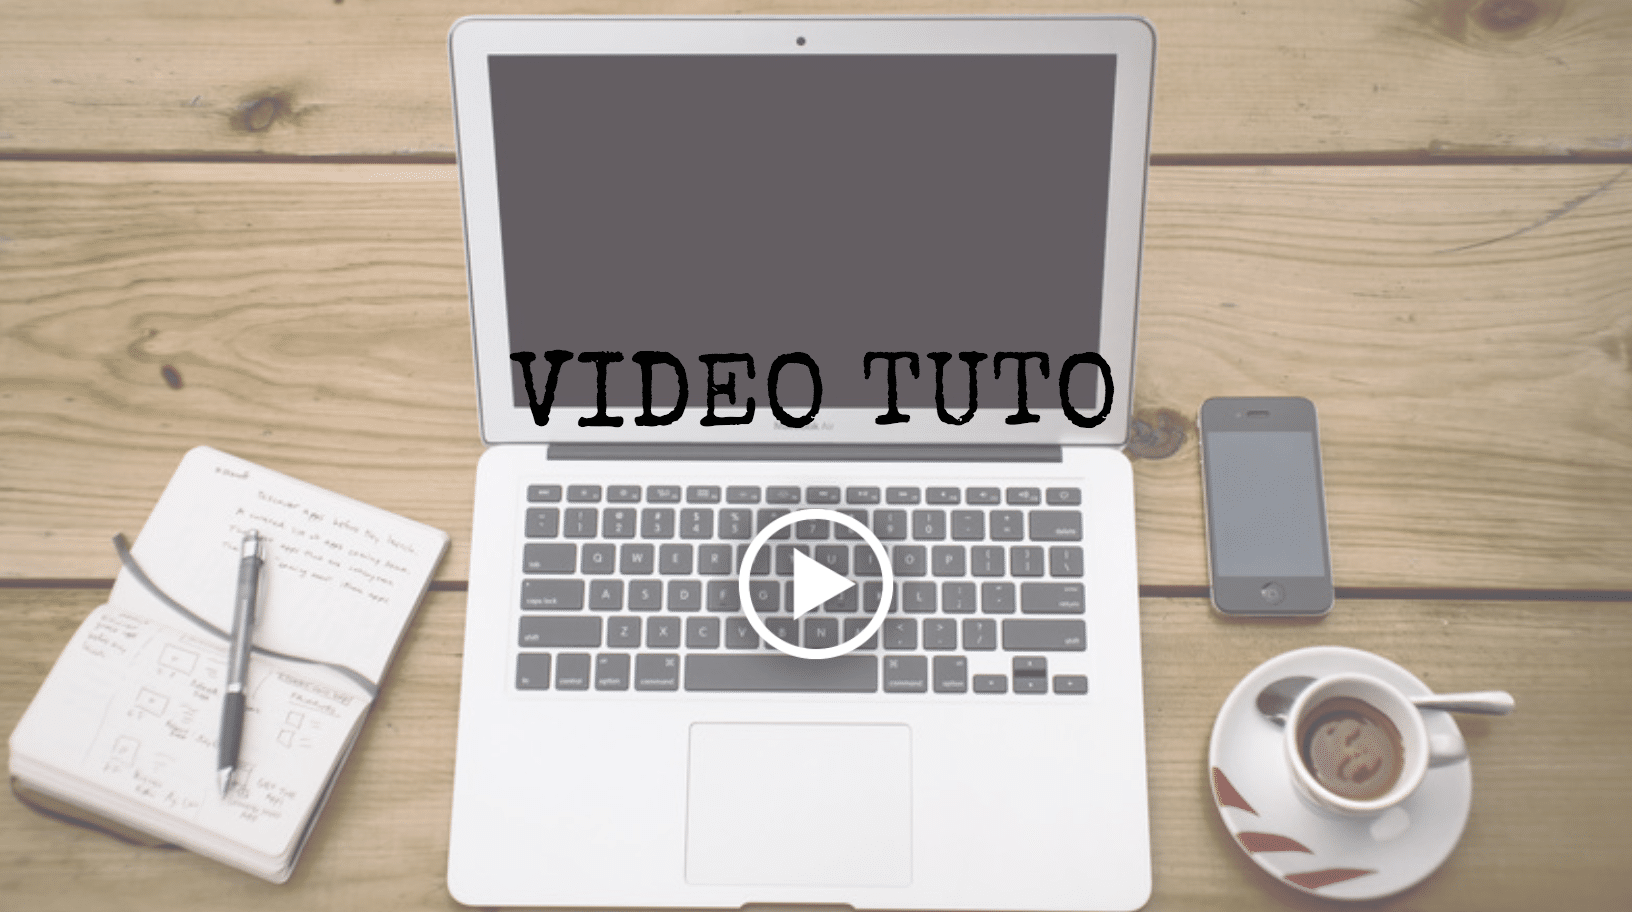 Créer facilement une vidéo d’animation ou un tutoriel en vidéo pour promouvoir sa marque